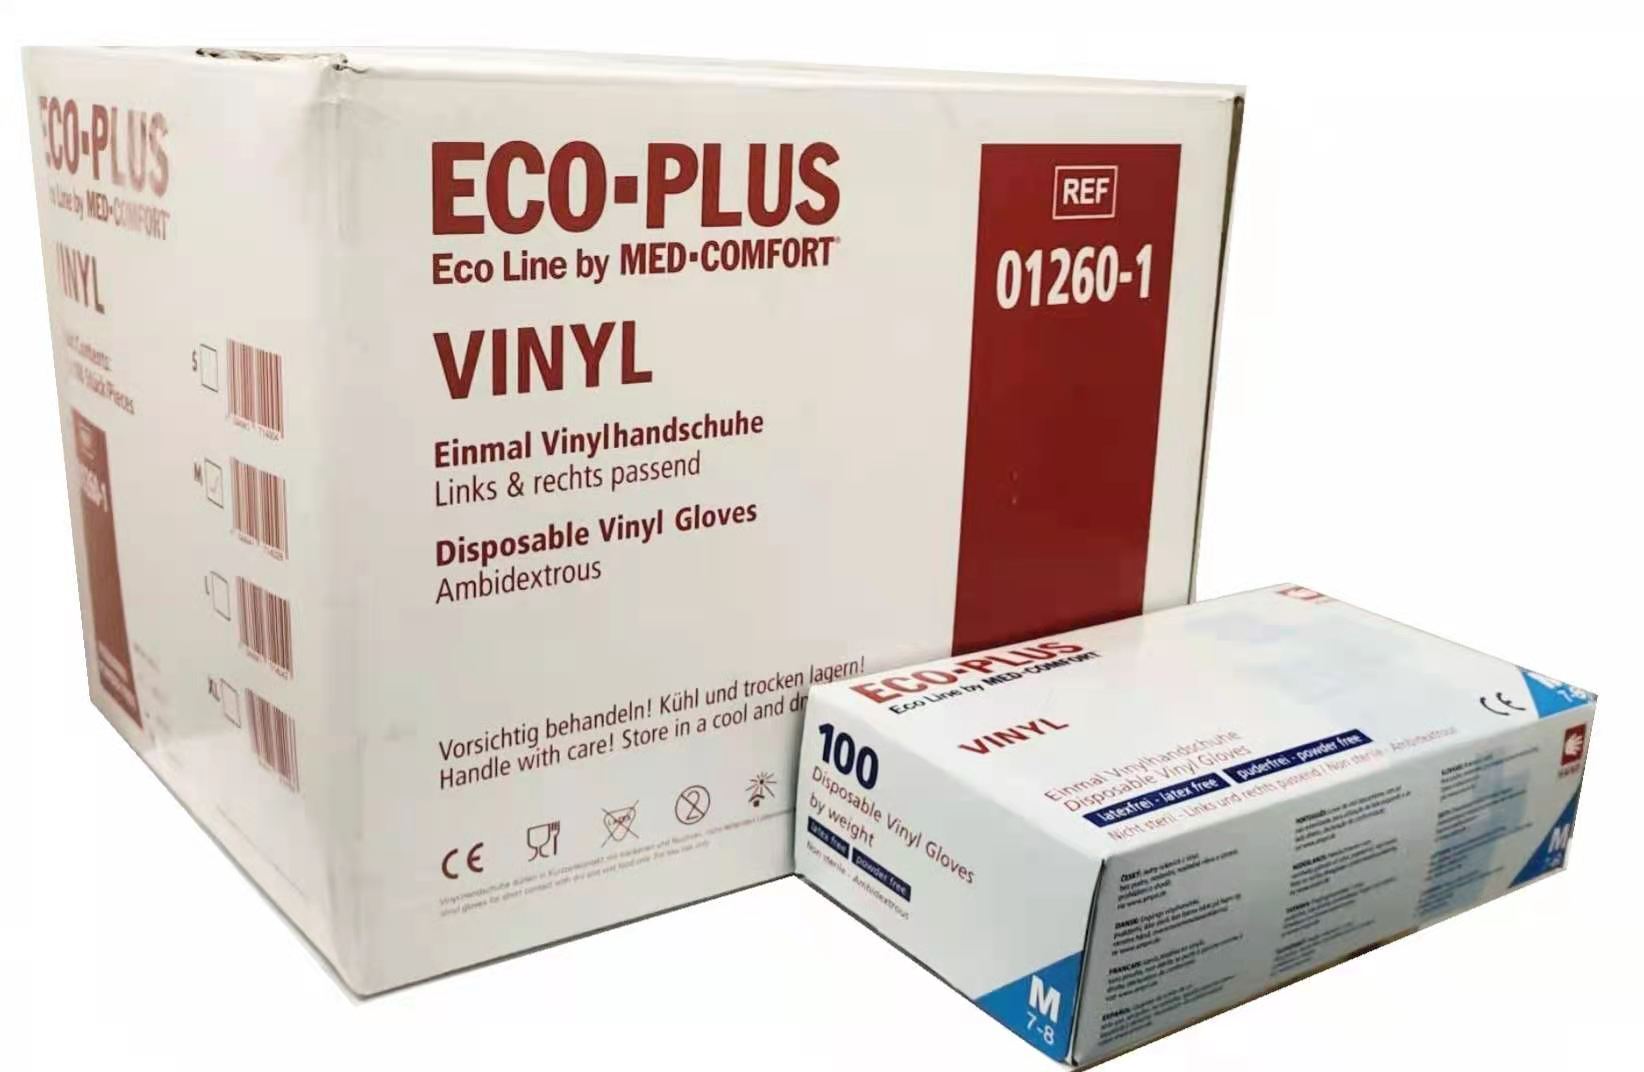    ECO-Plus Vinyl Handschuhe Med-Comfort 1000 St.( 1 Karton, 10x100er)